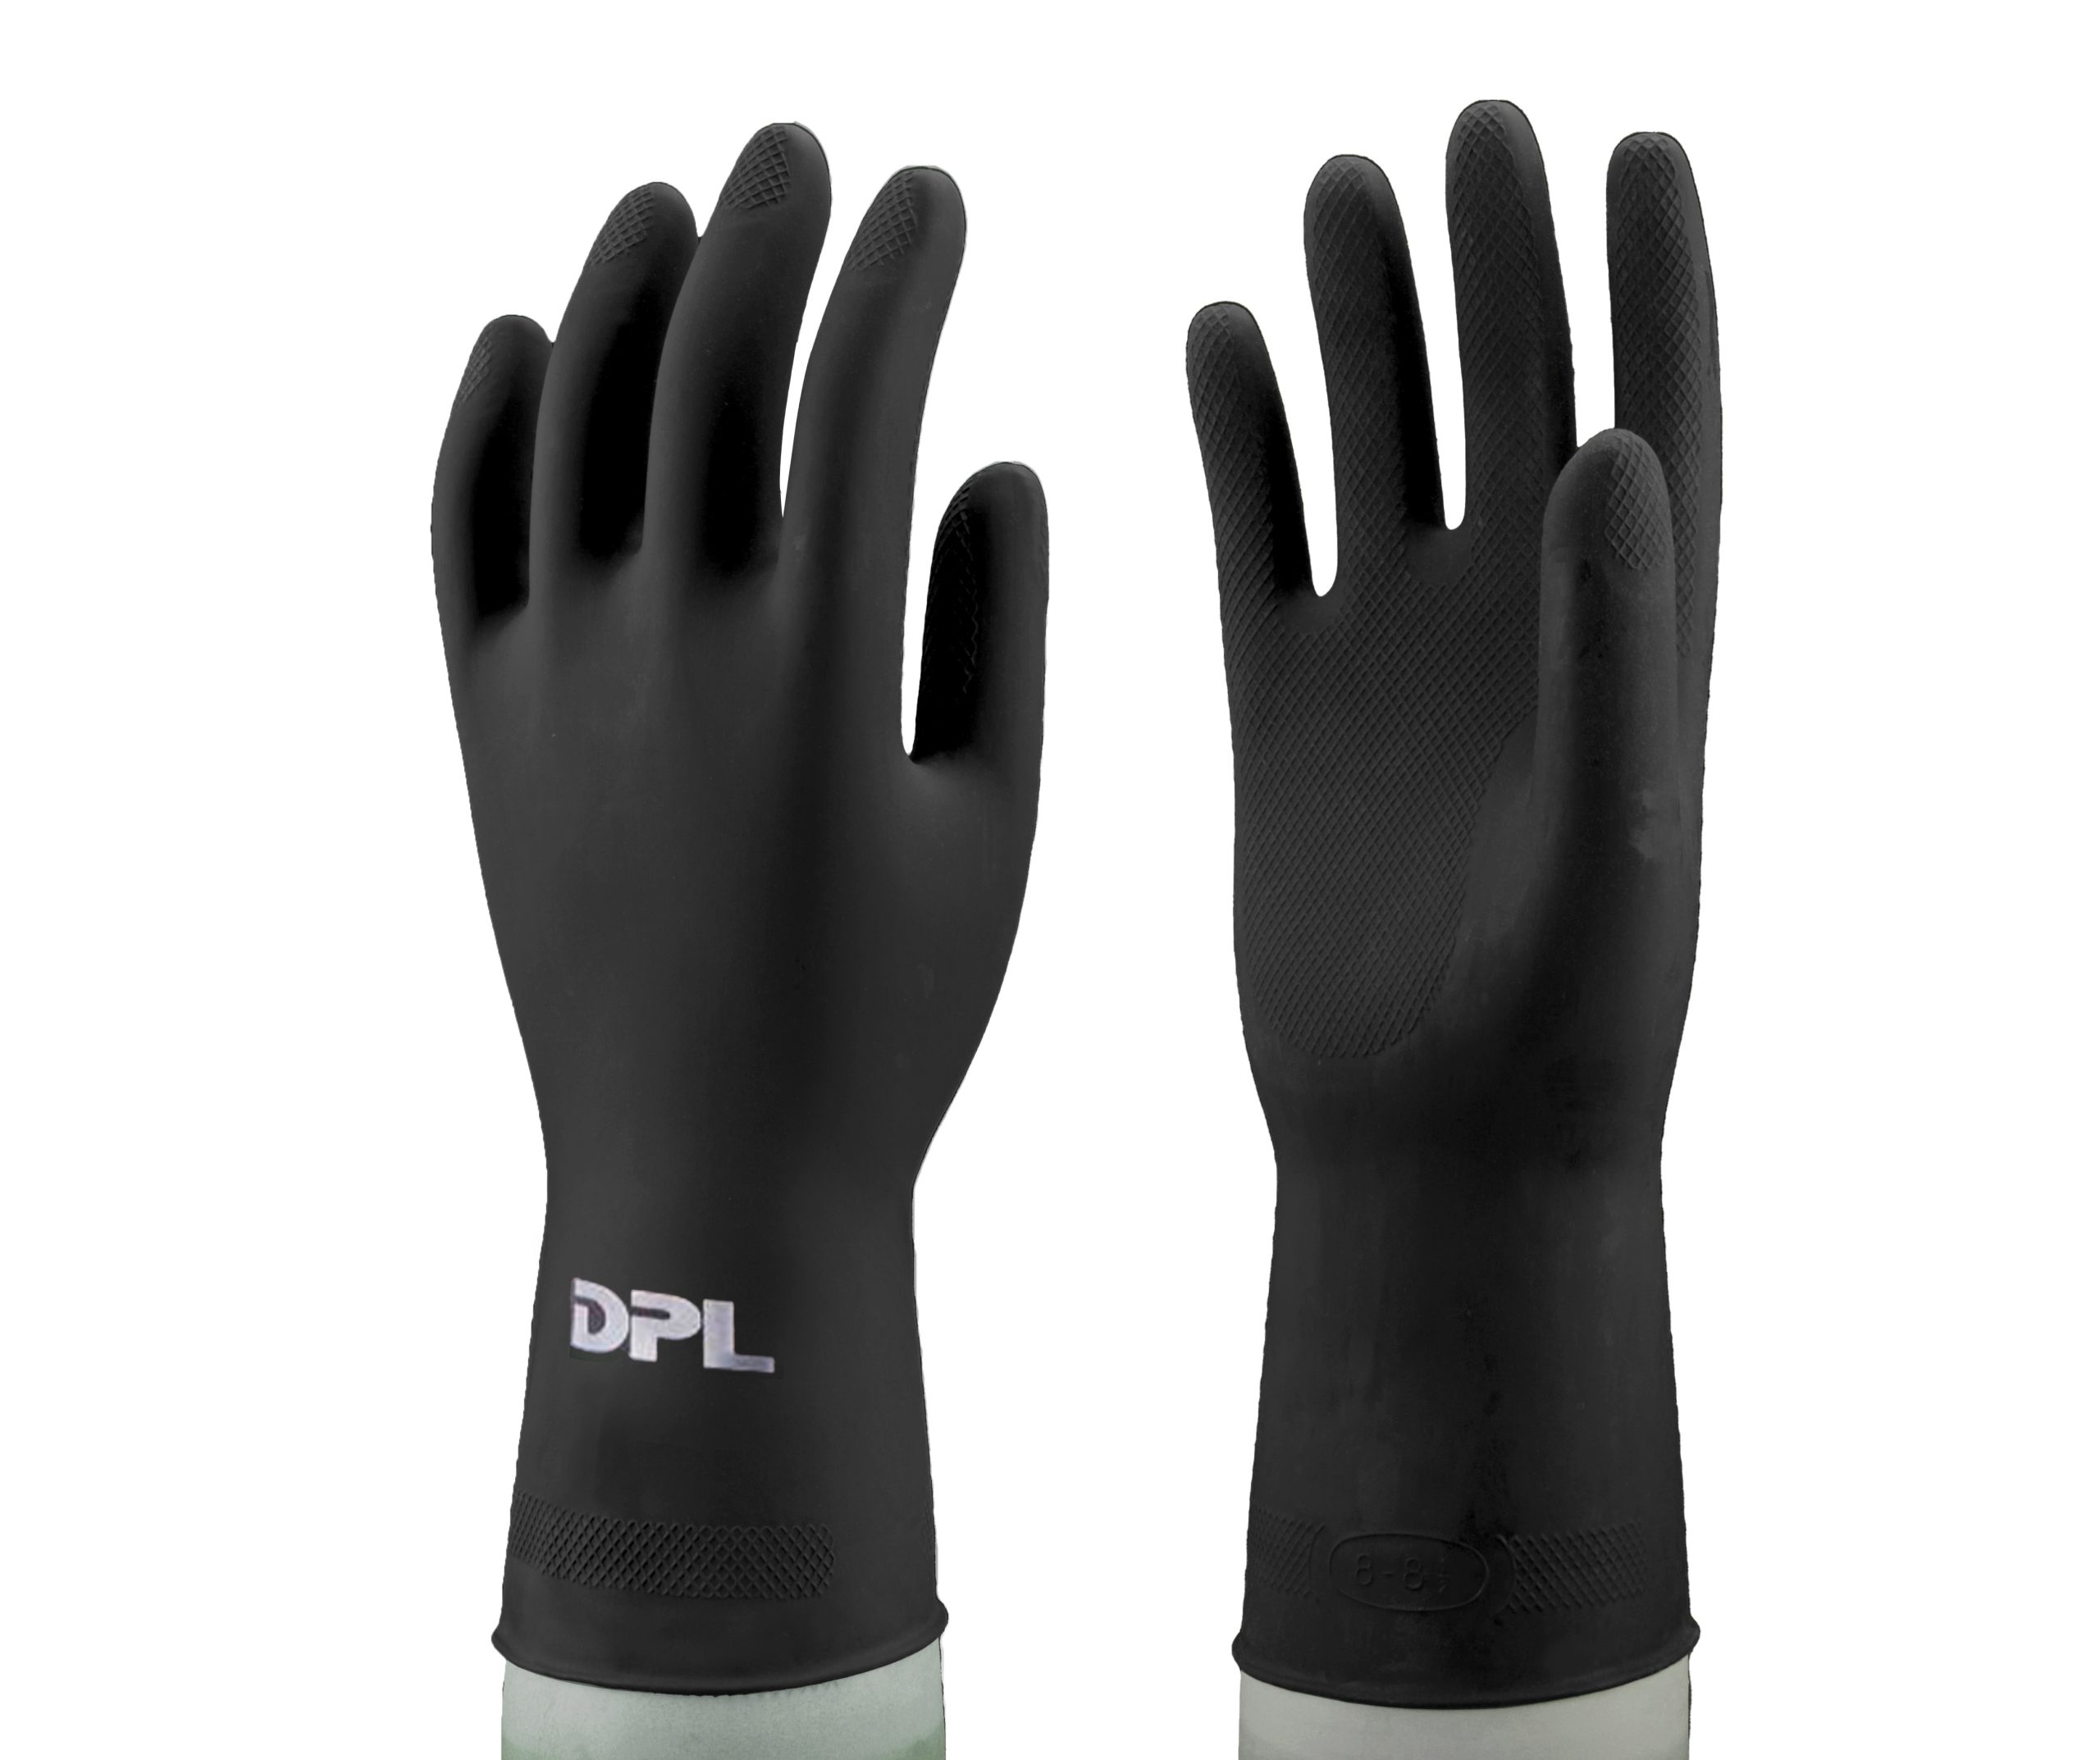 Novasuper 80 Gloves